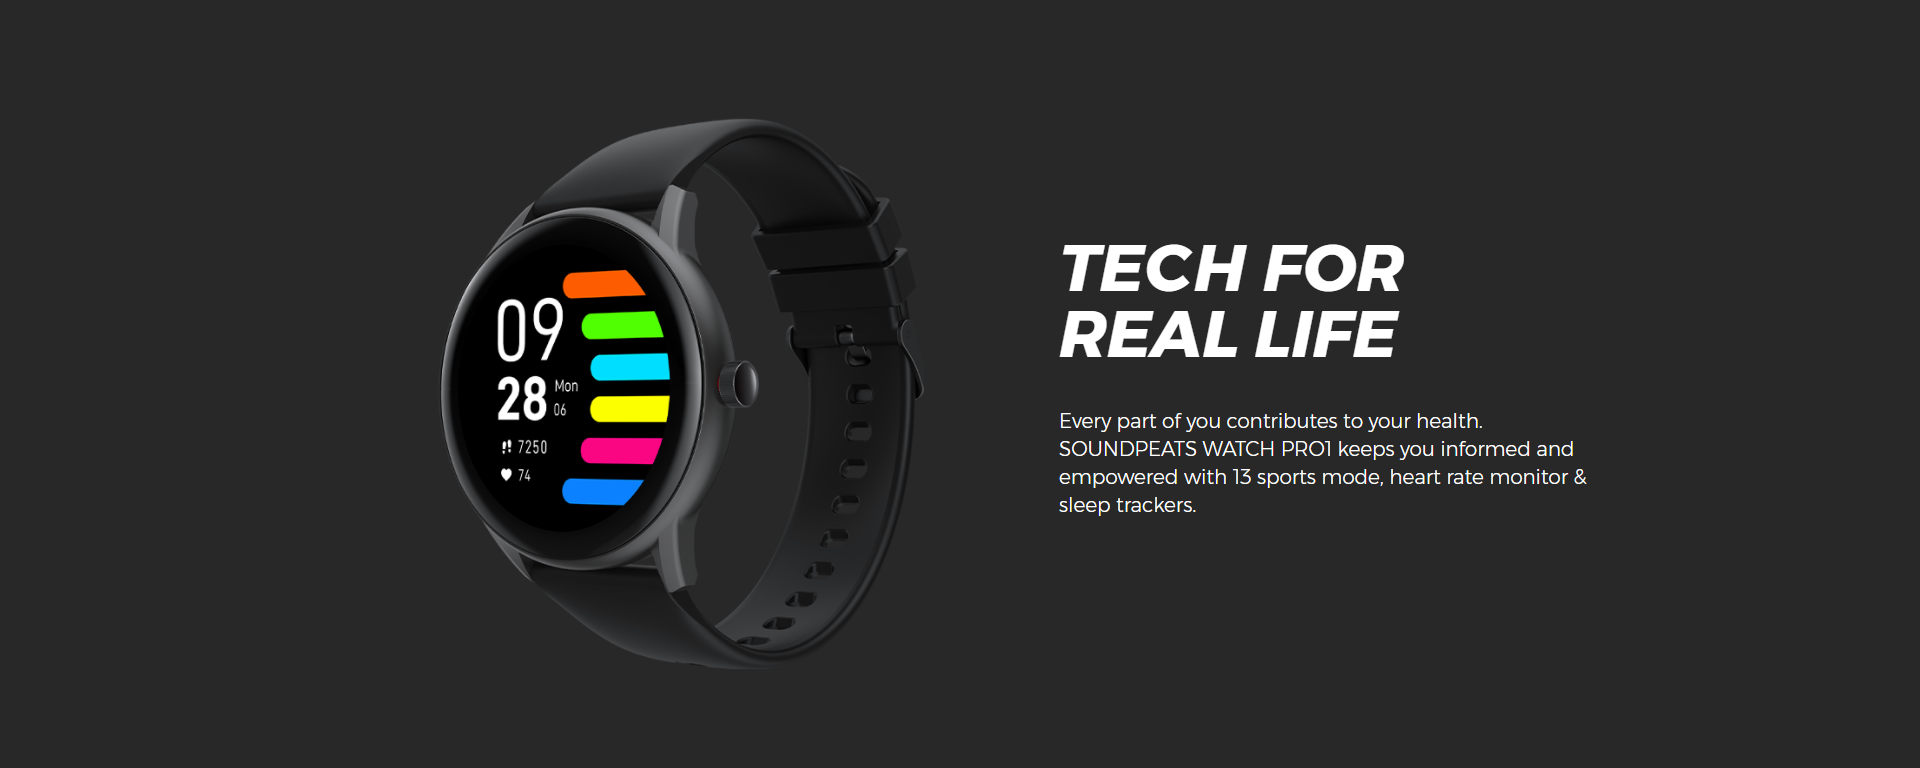 smart watches watch pro Soundpeats 2